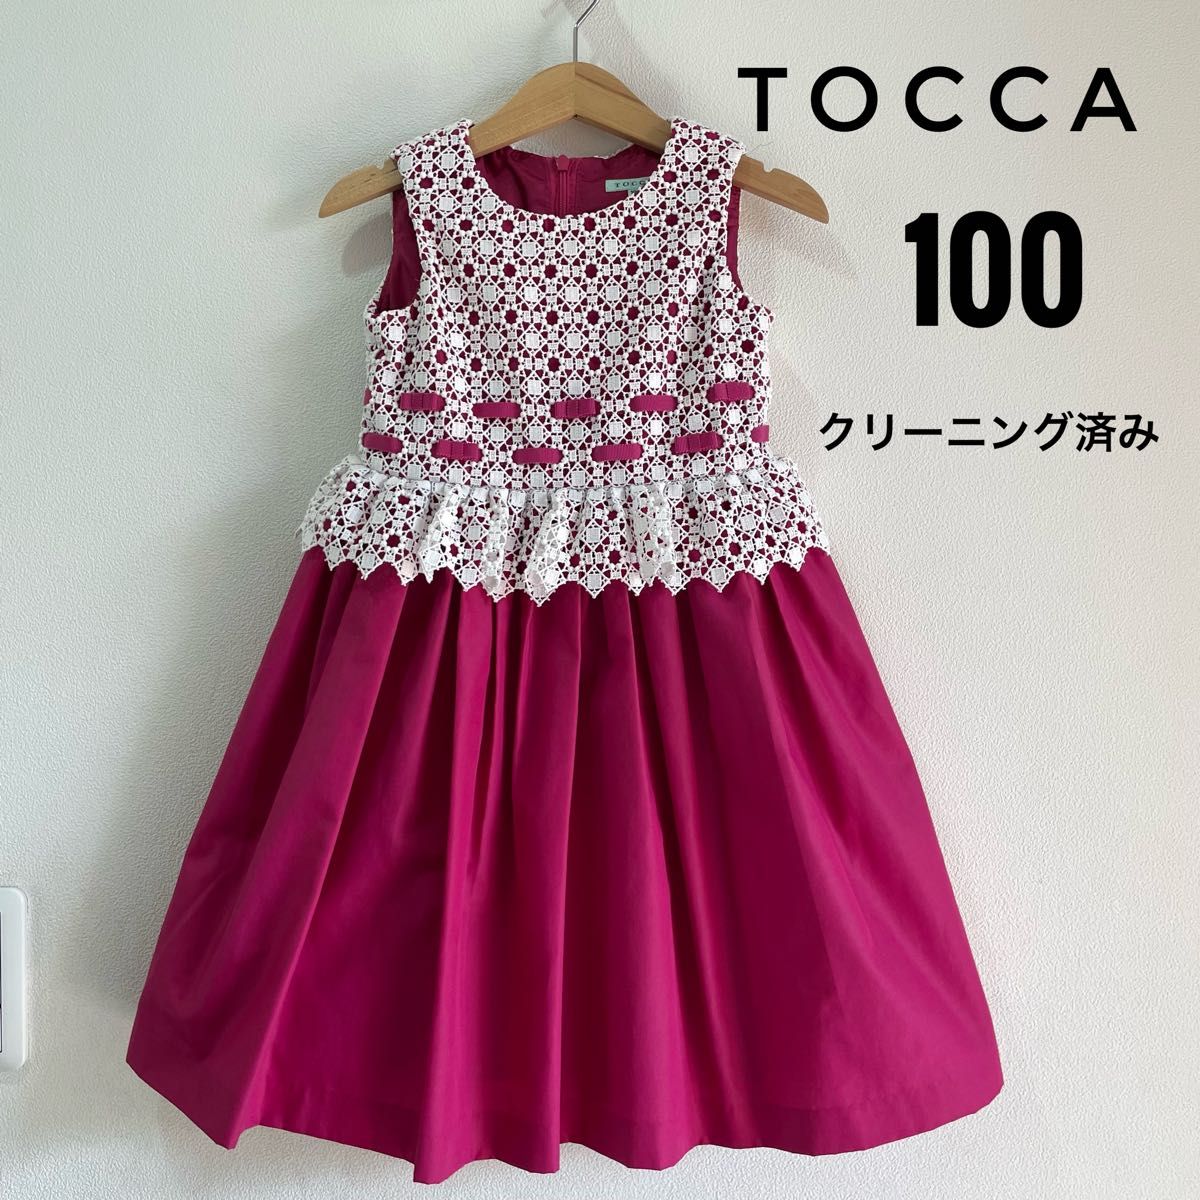 TOCCA トッカ ワンピース ドレス フォーマル レース 100 女の子 発表会